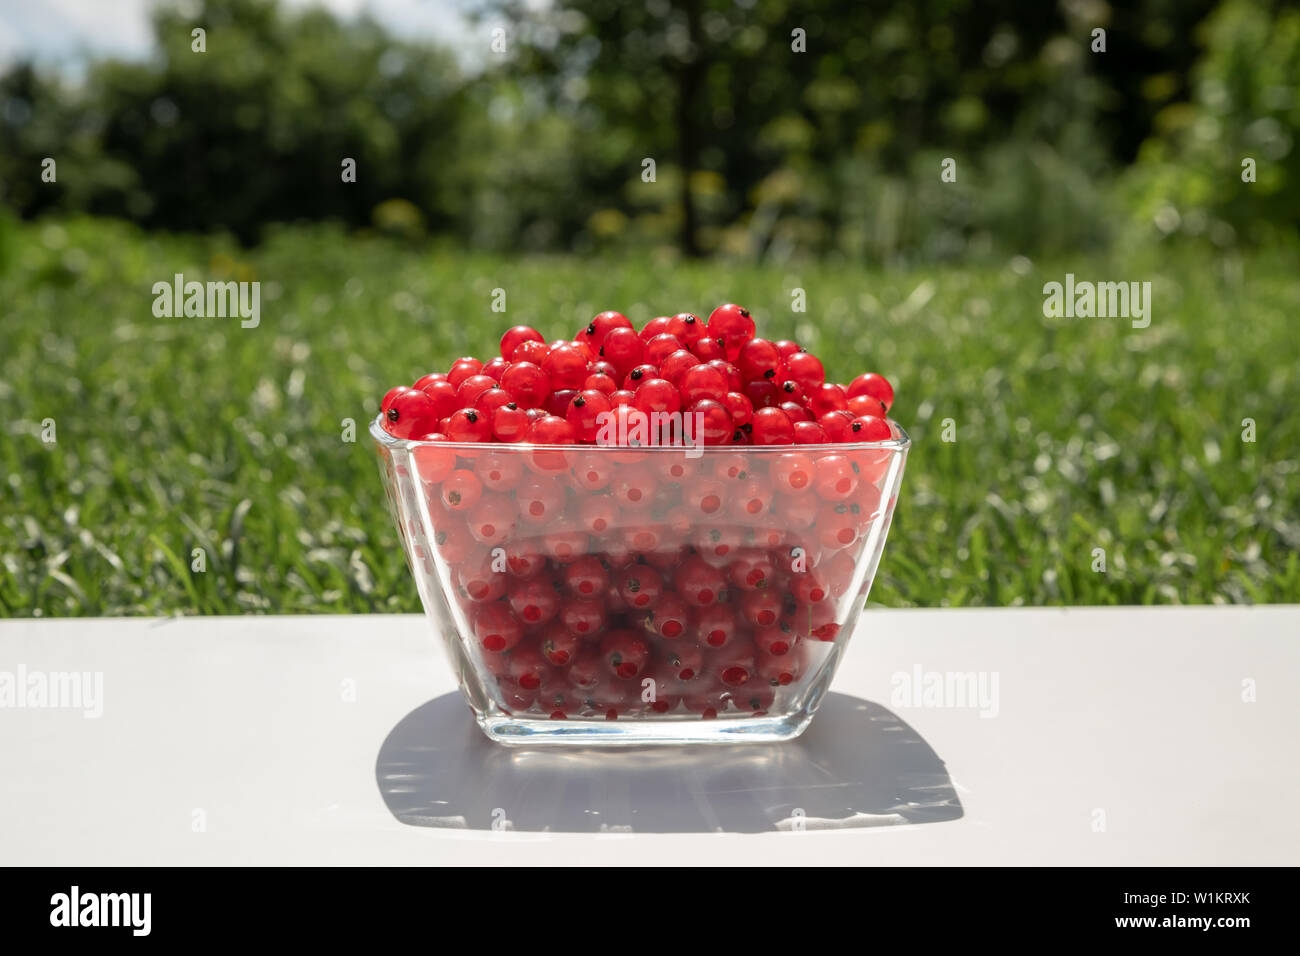 Descripción: cosecha de verano tabla con grosellas rojas en copas sobre una mesa de madera blanca con el pasto en el fondo Foto de stock